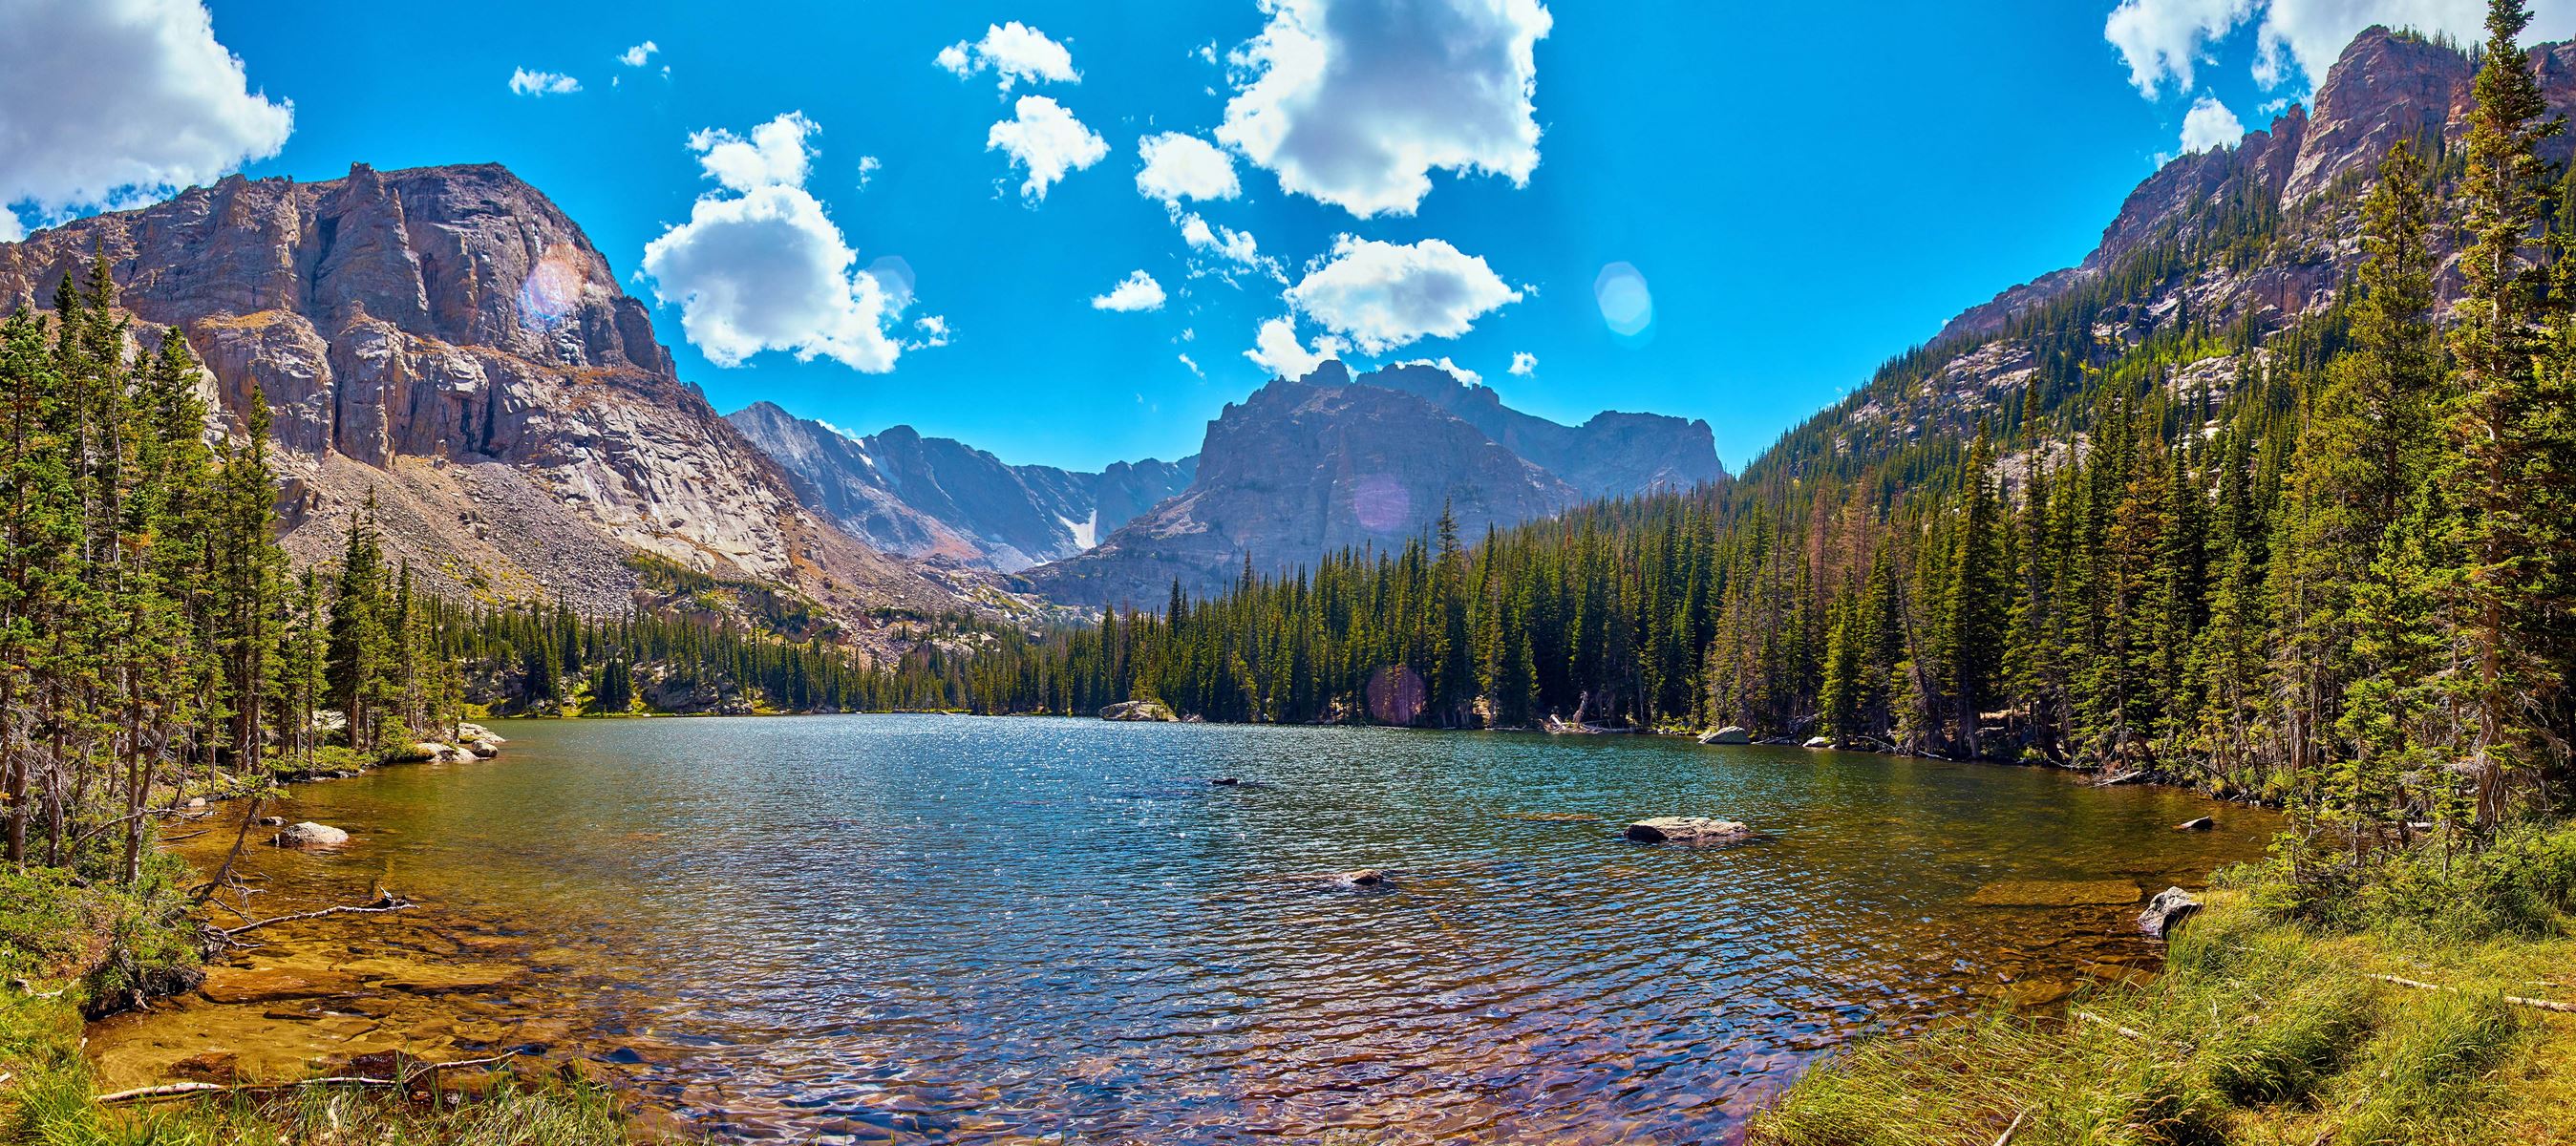 A lake next to mountains